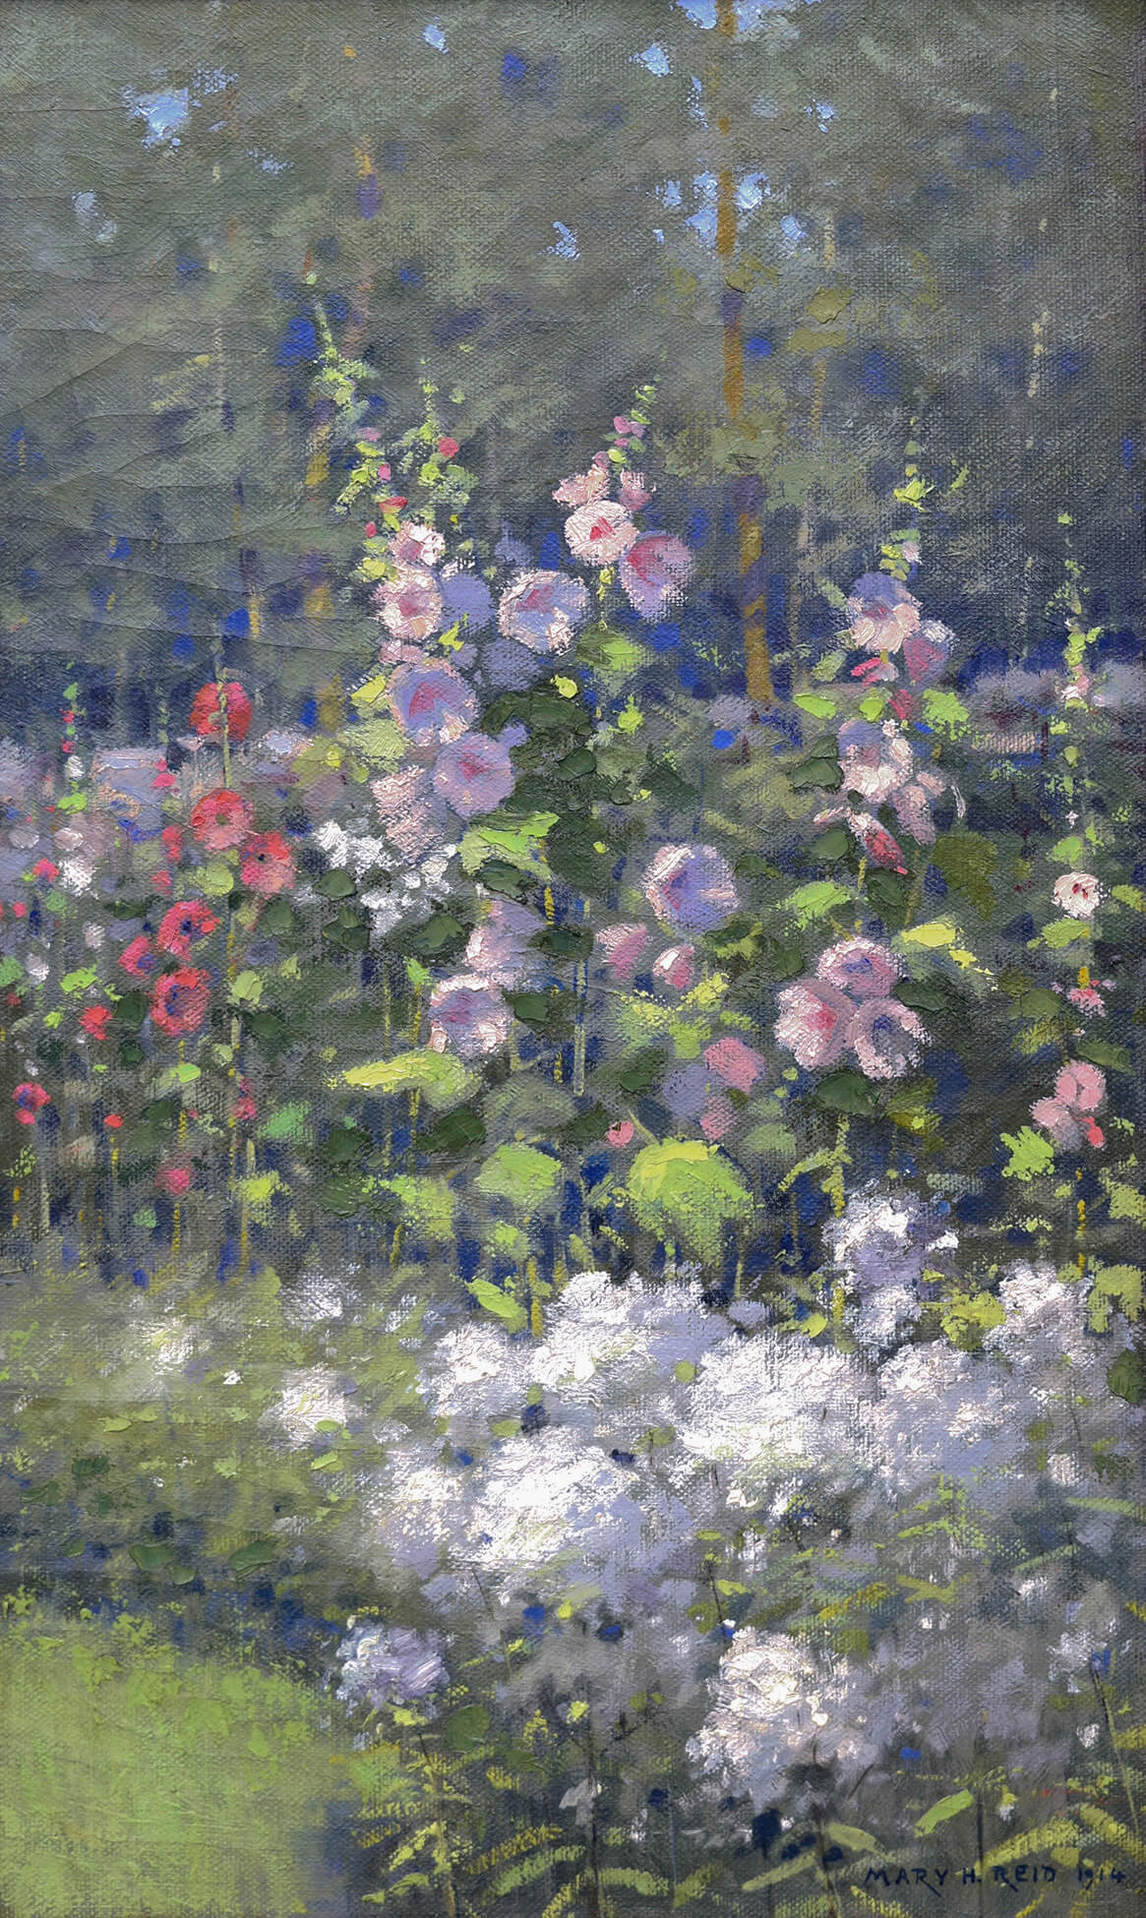 Mary Hiester Reid, Hollyhocks (Roses trémières), 1914